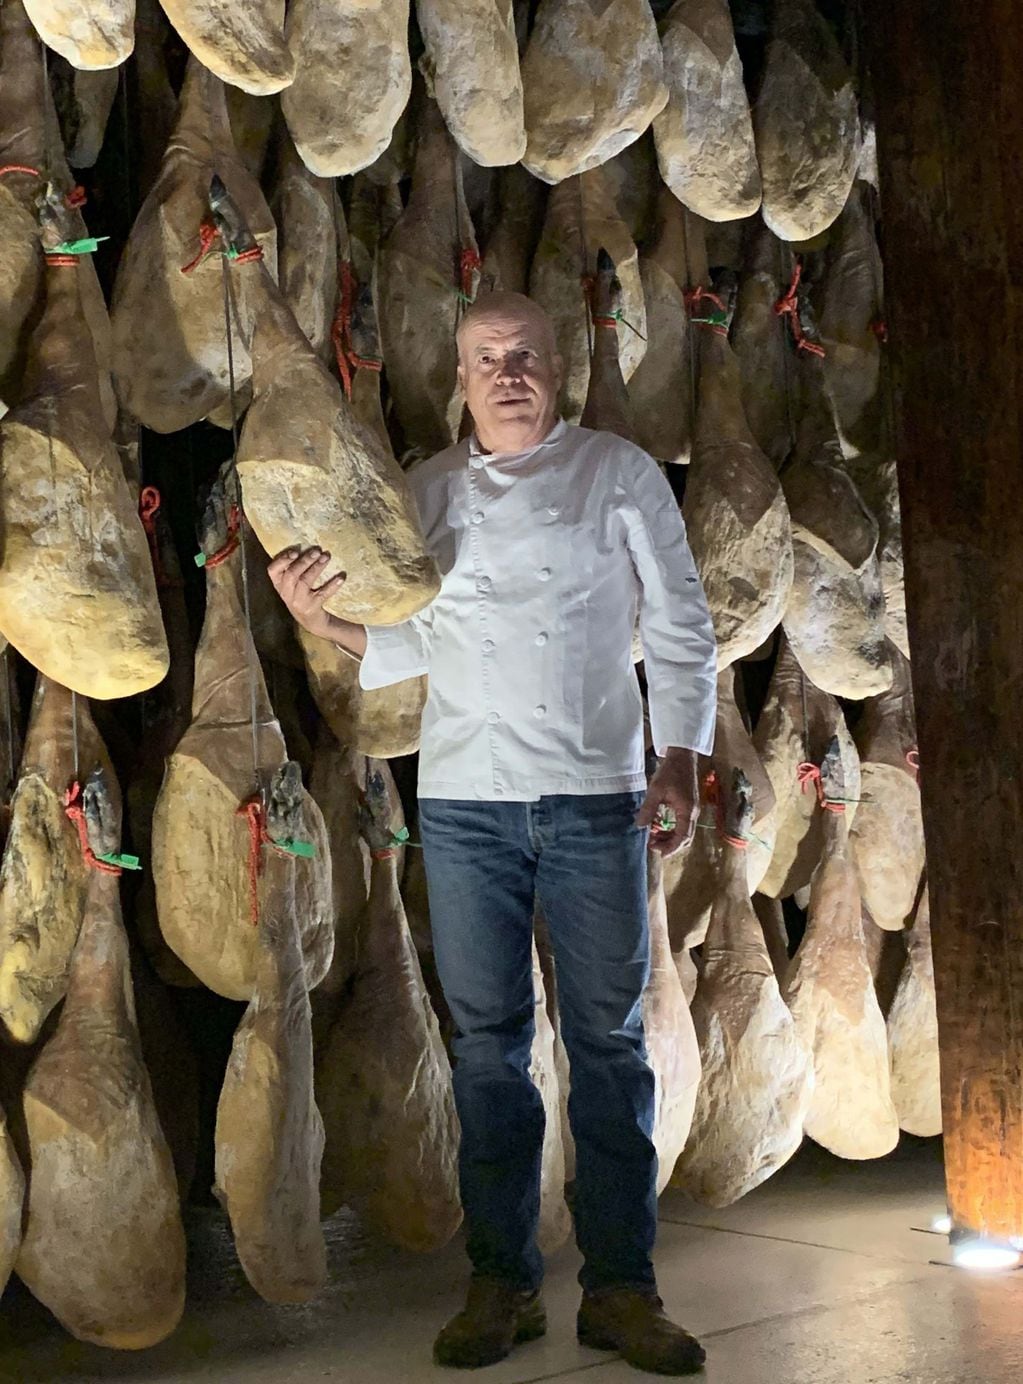 Kiko Fernández y su familia venden uno de los jamones de pata negra más exquisitos del país, mezclando las particularidades de Salta con sus tradiciones de España.